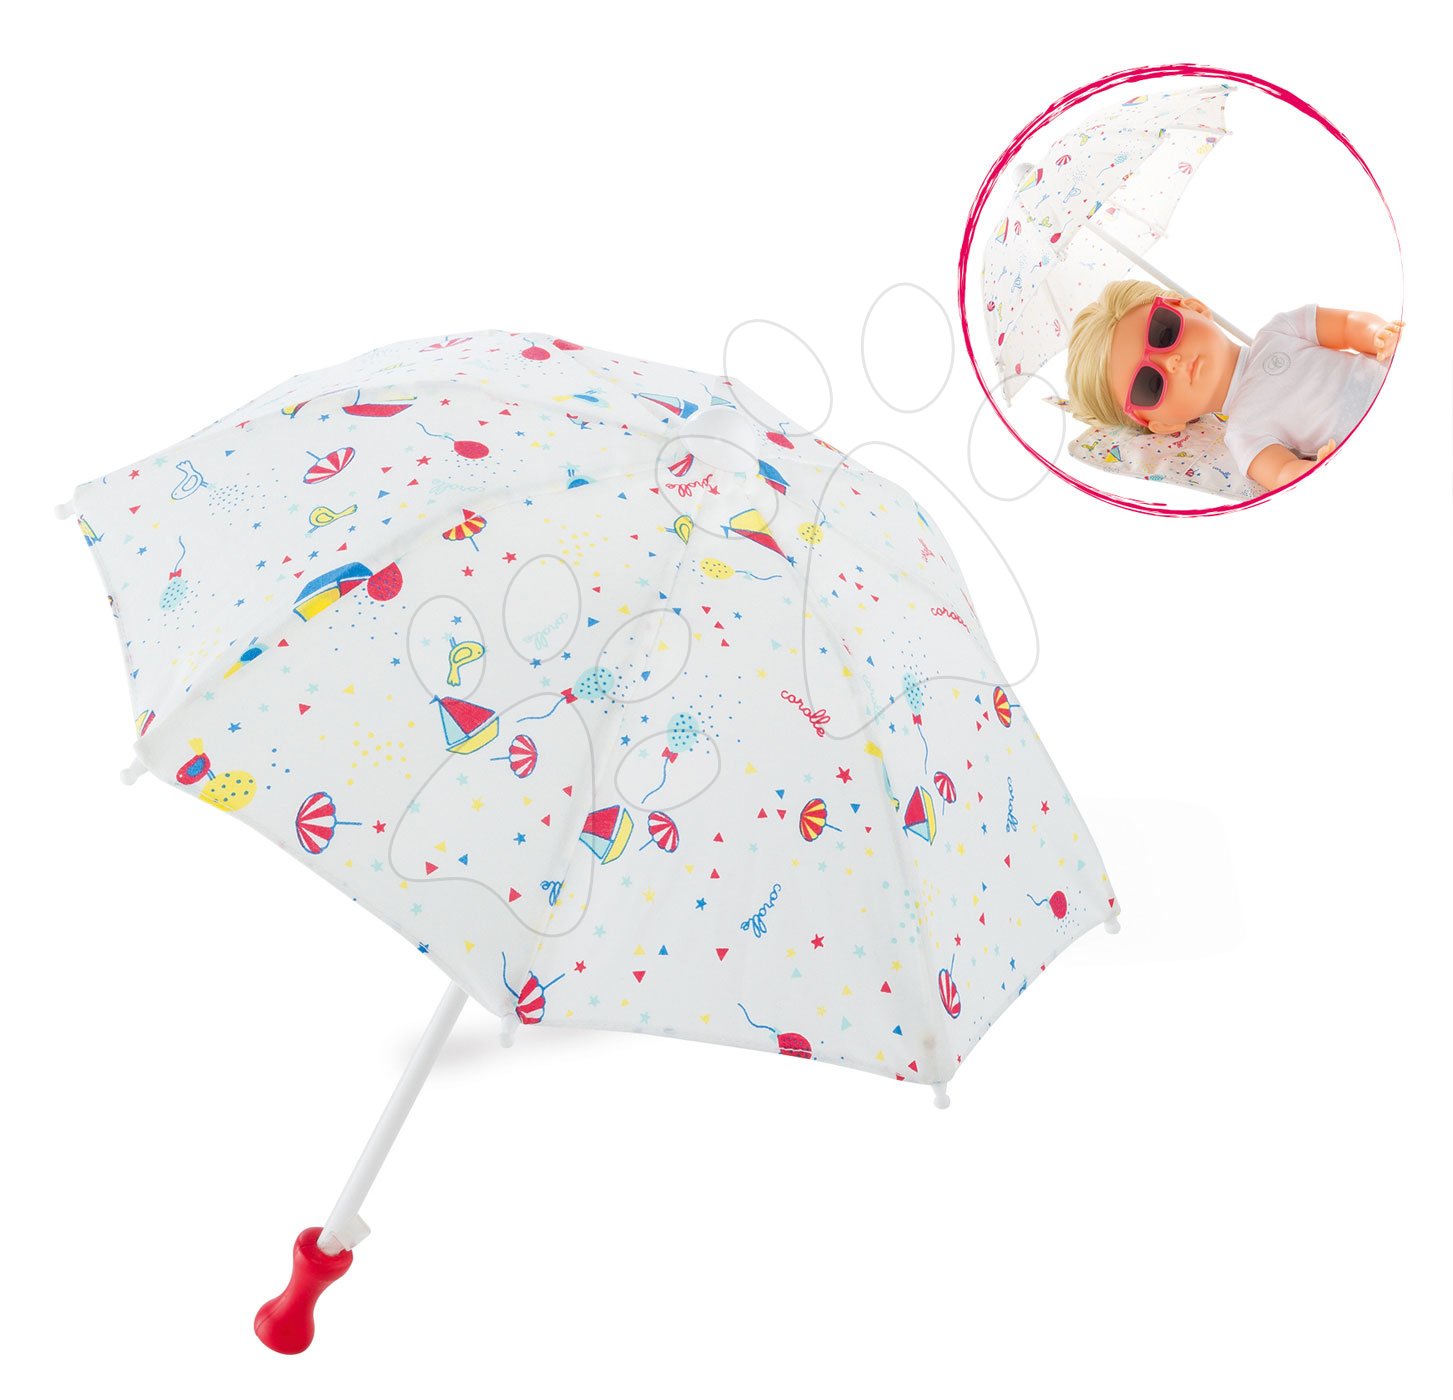 Játékbaba kiegészítők - Napernyő Beach Umbrella Ma Corolle 36 cm játékbaba részére 4 évtől